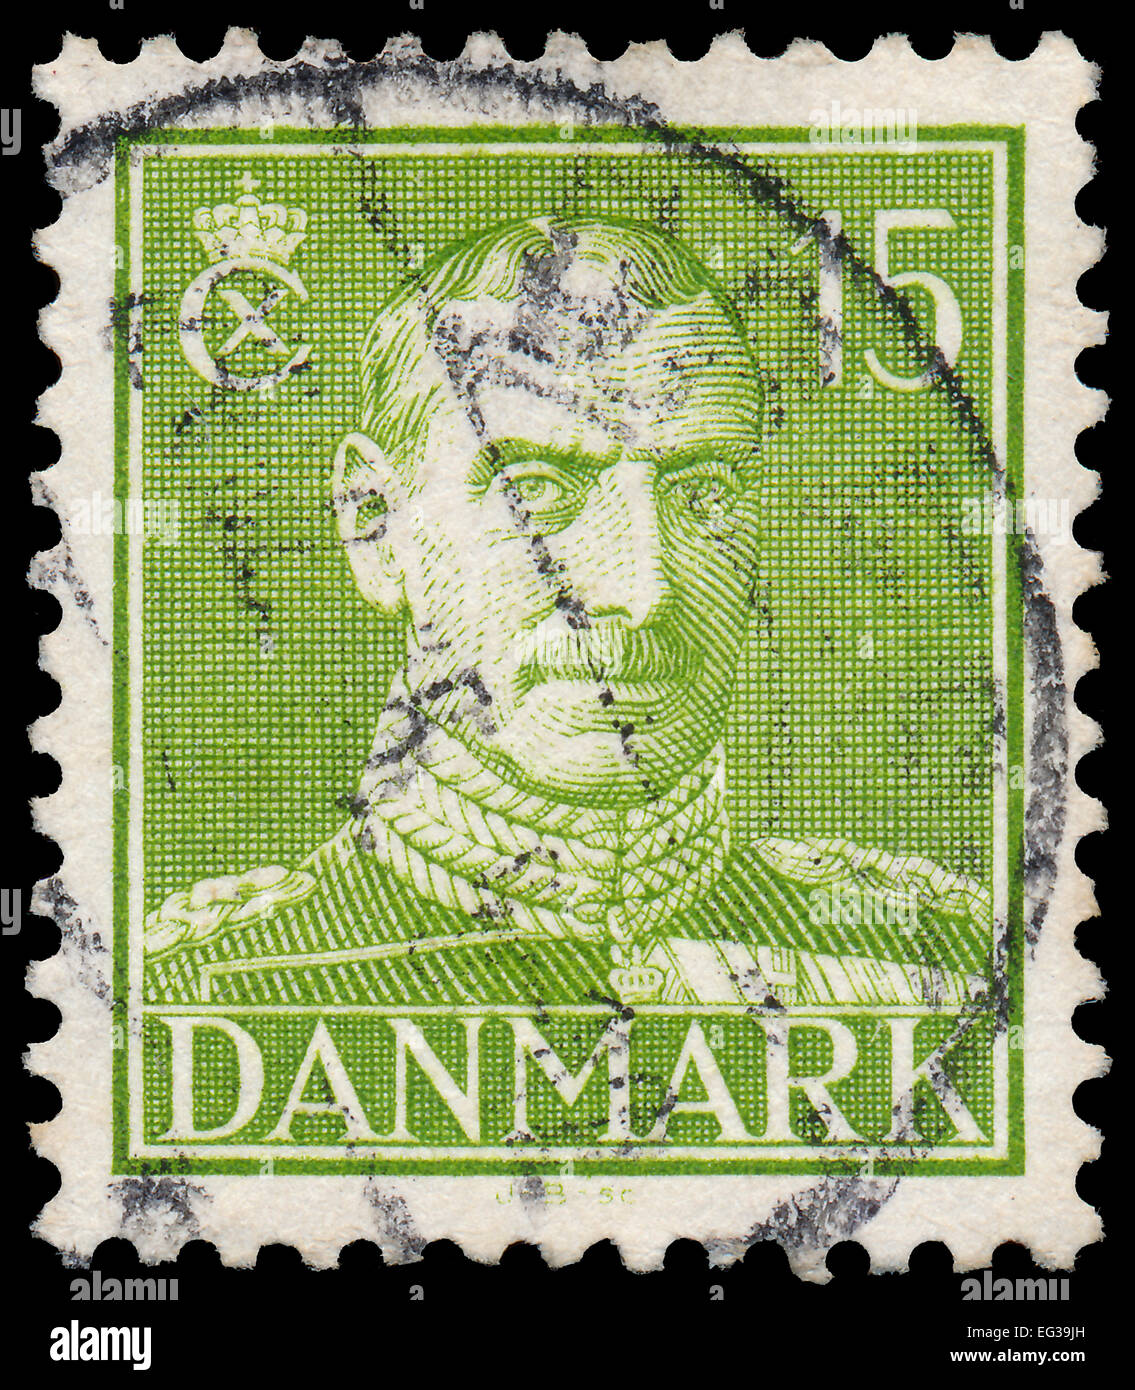 DENMARK - CIRCA 1942: A stamp printed in Denmark shows King Christian X, circa 1942. Stock Photo